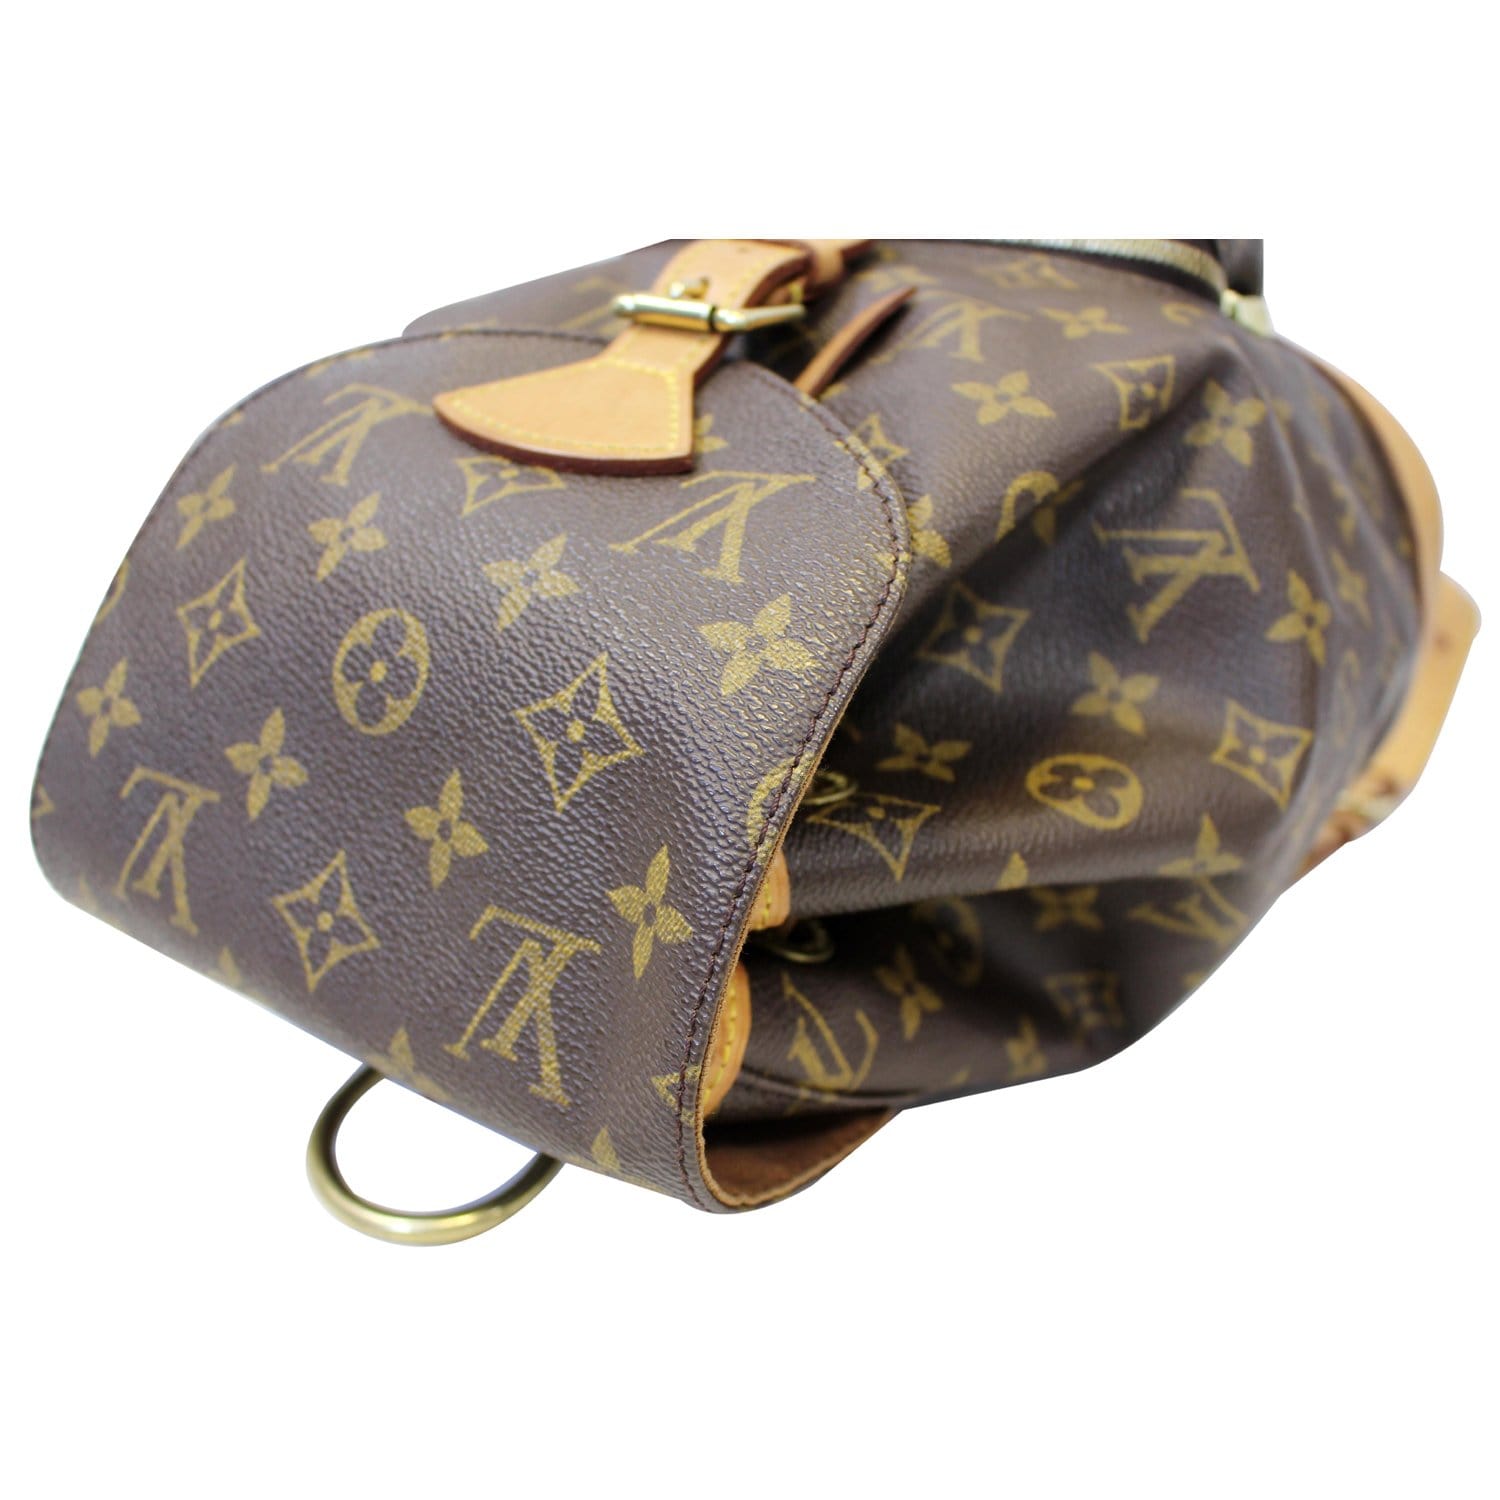 Louis Vuitton Brown Monogram Canvas Leather Montsouris Mm Backpack Bag  Auction